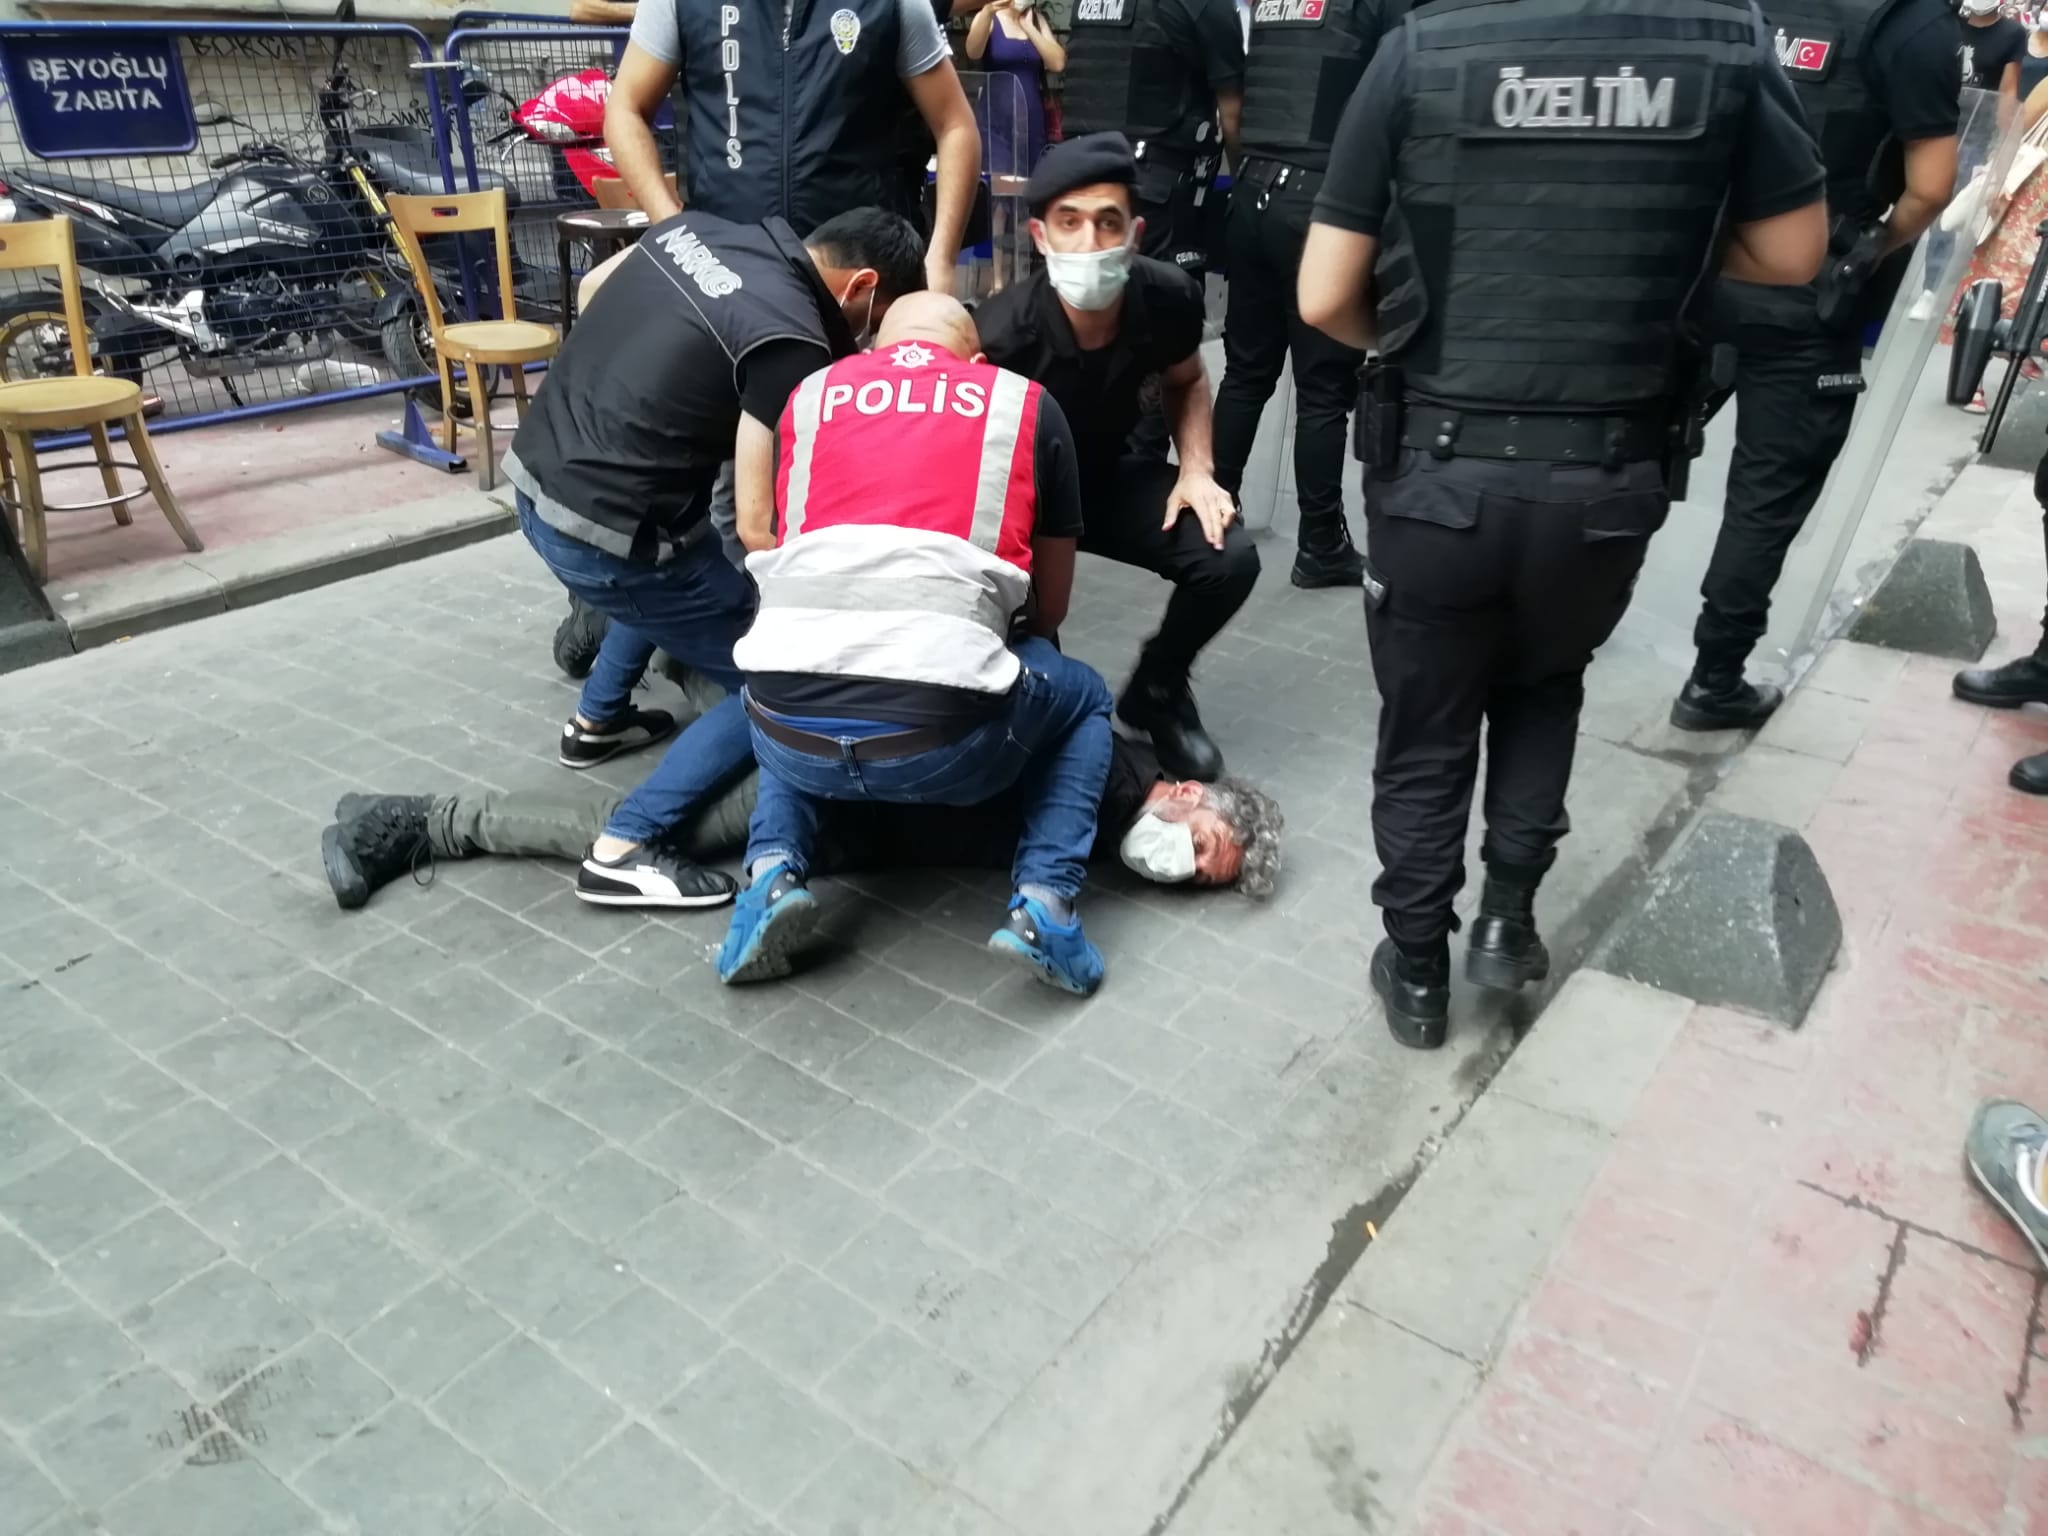 Polislerin Onur Yürüyüşü'nde boğazına basıp, nefesini kestiği gazeteci yargılanıyor | Kaos GL - LGBTİ+ Haber Portalı Haber